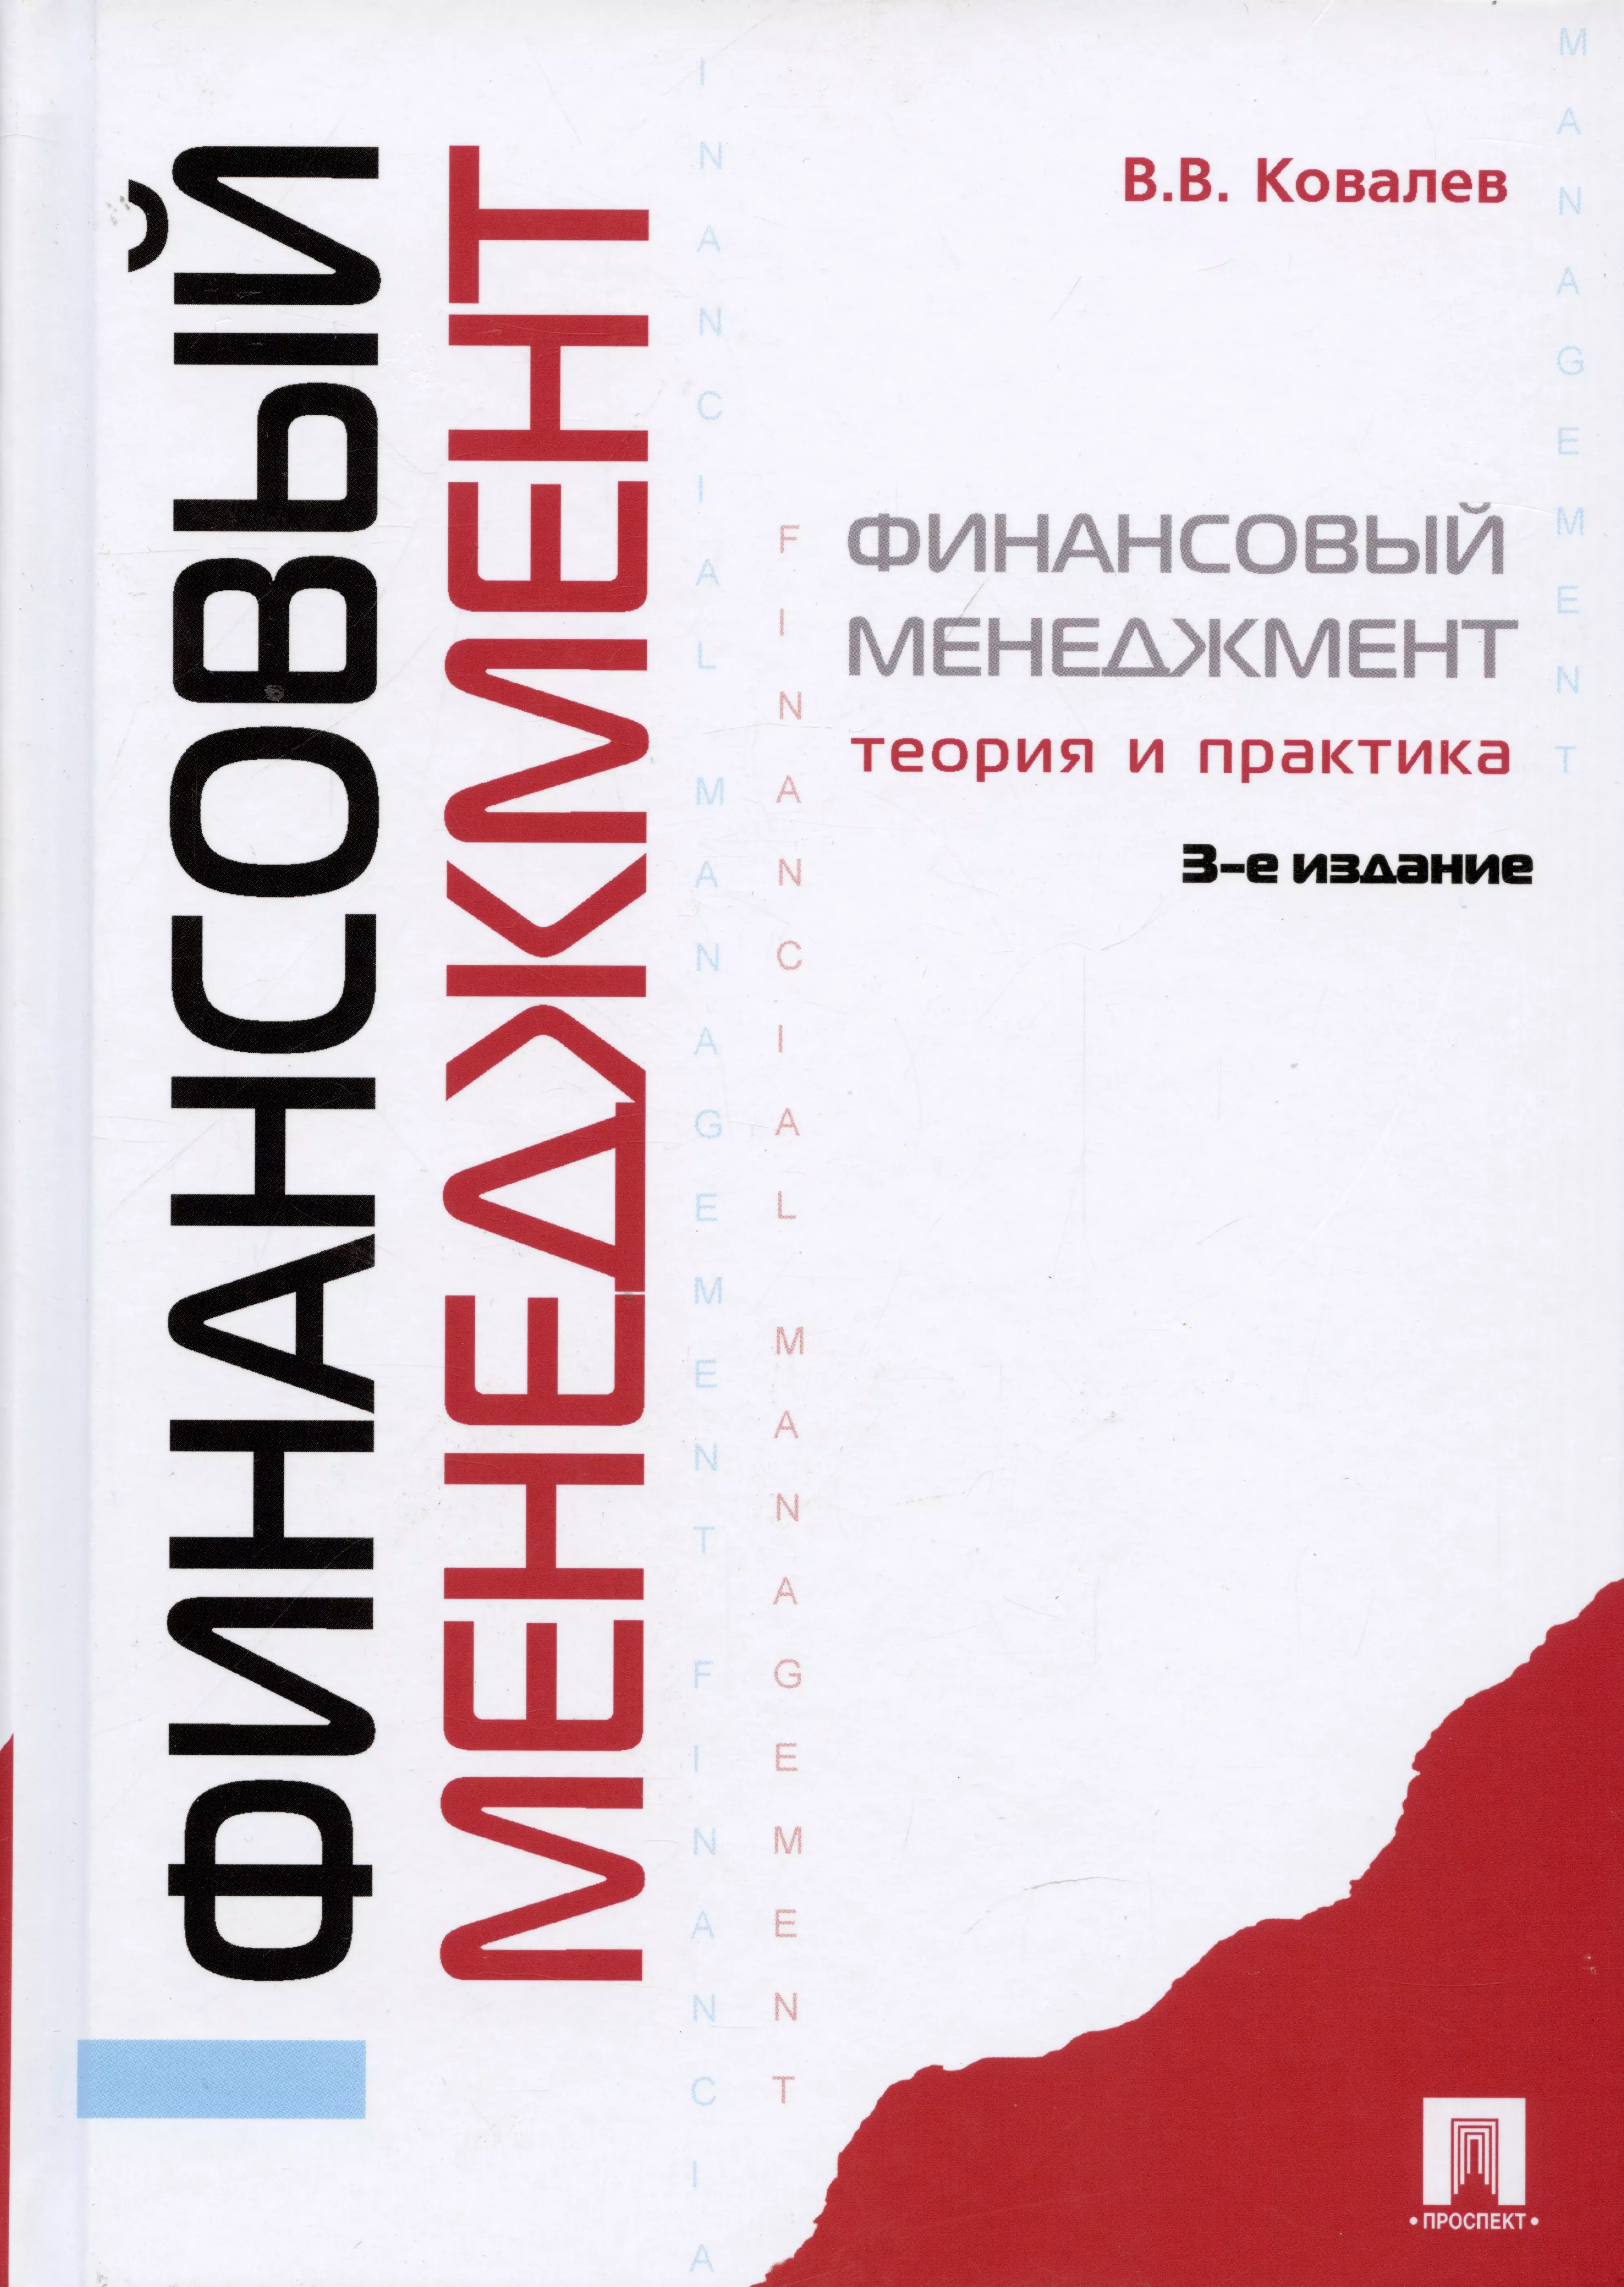 Ковалев Валерий Викторович - Финансовый менеджмент: теория и практика / 3-е изд., перераб. и доп.